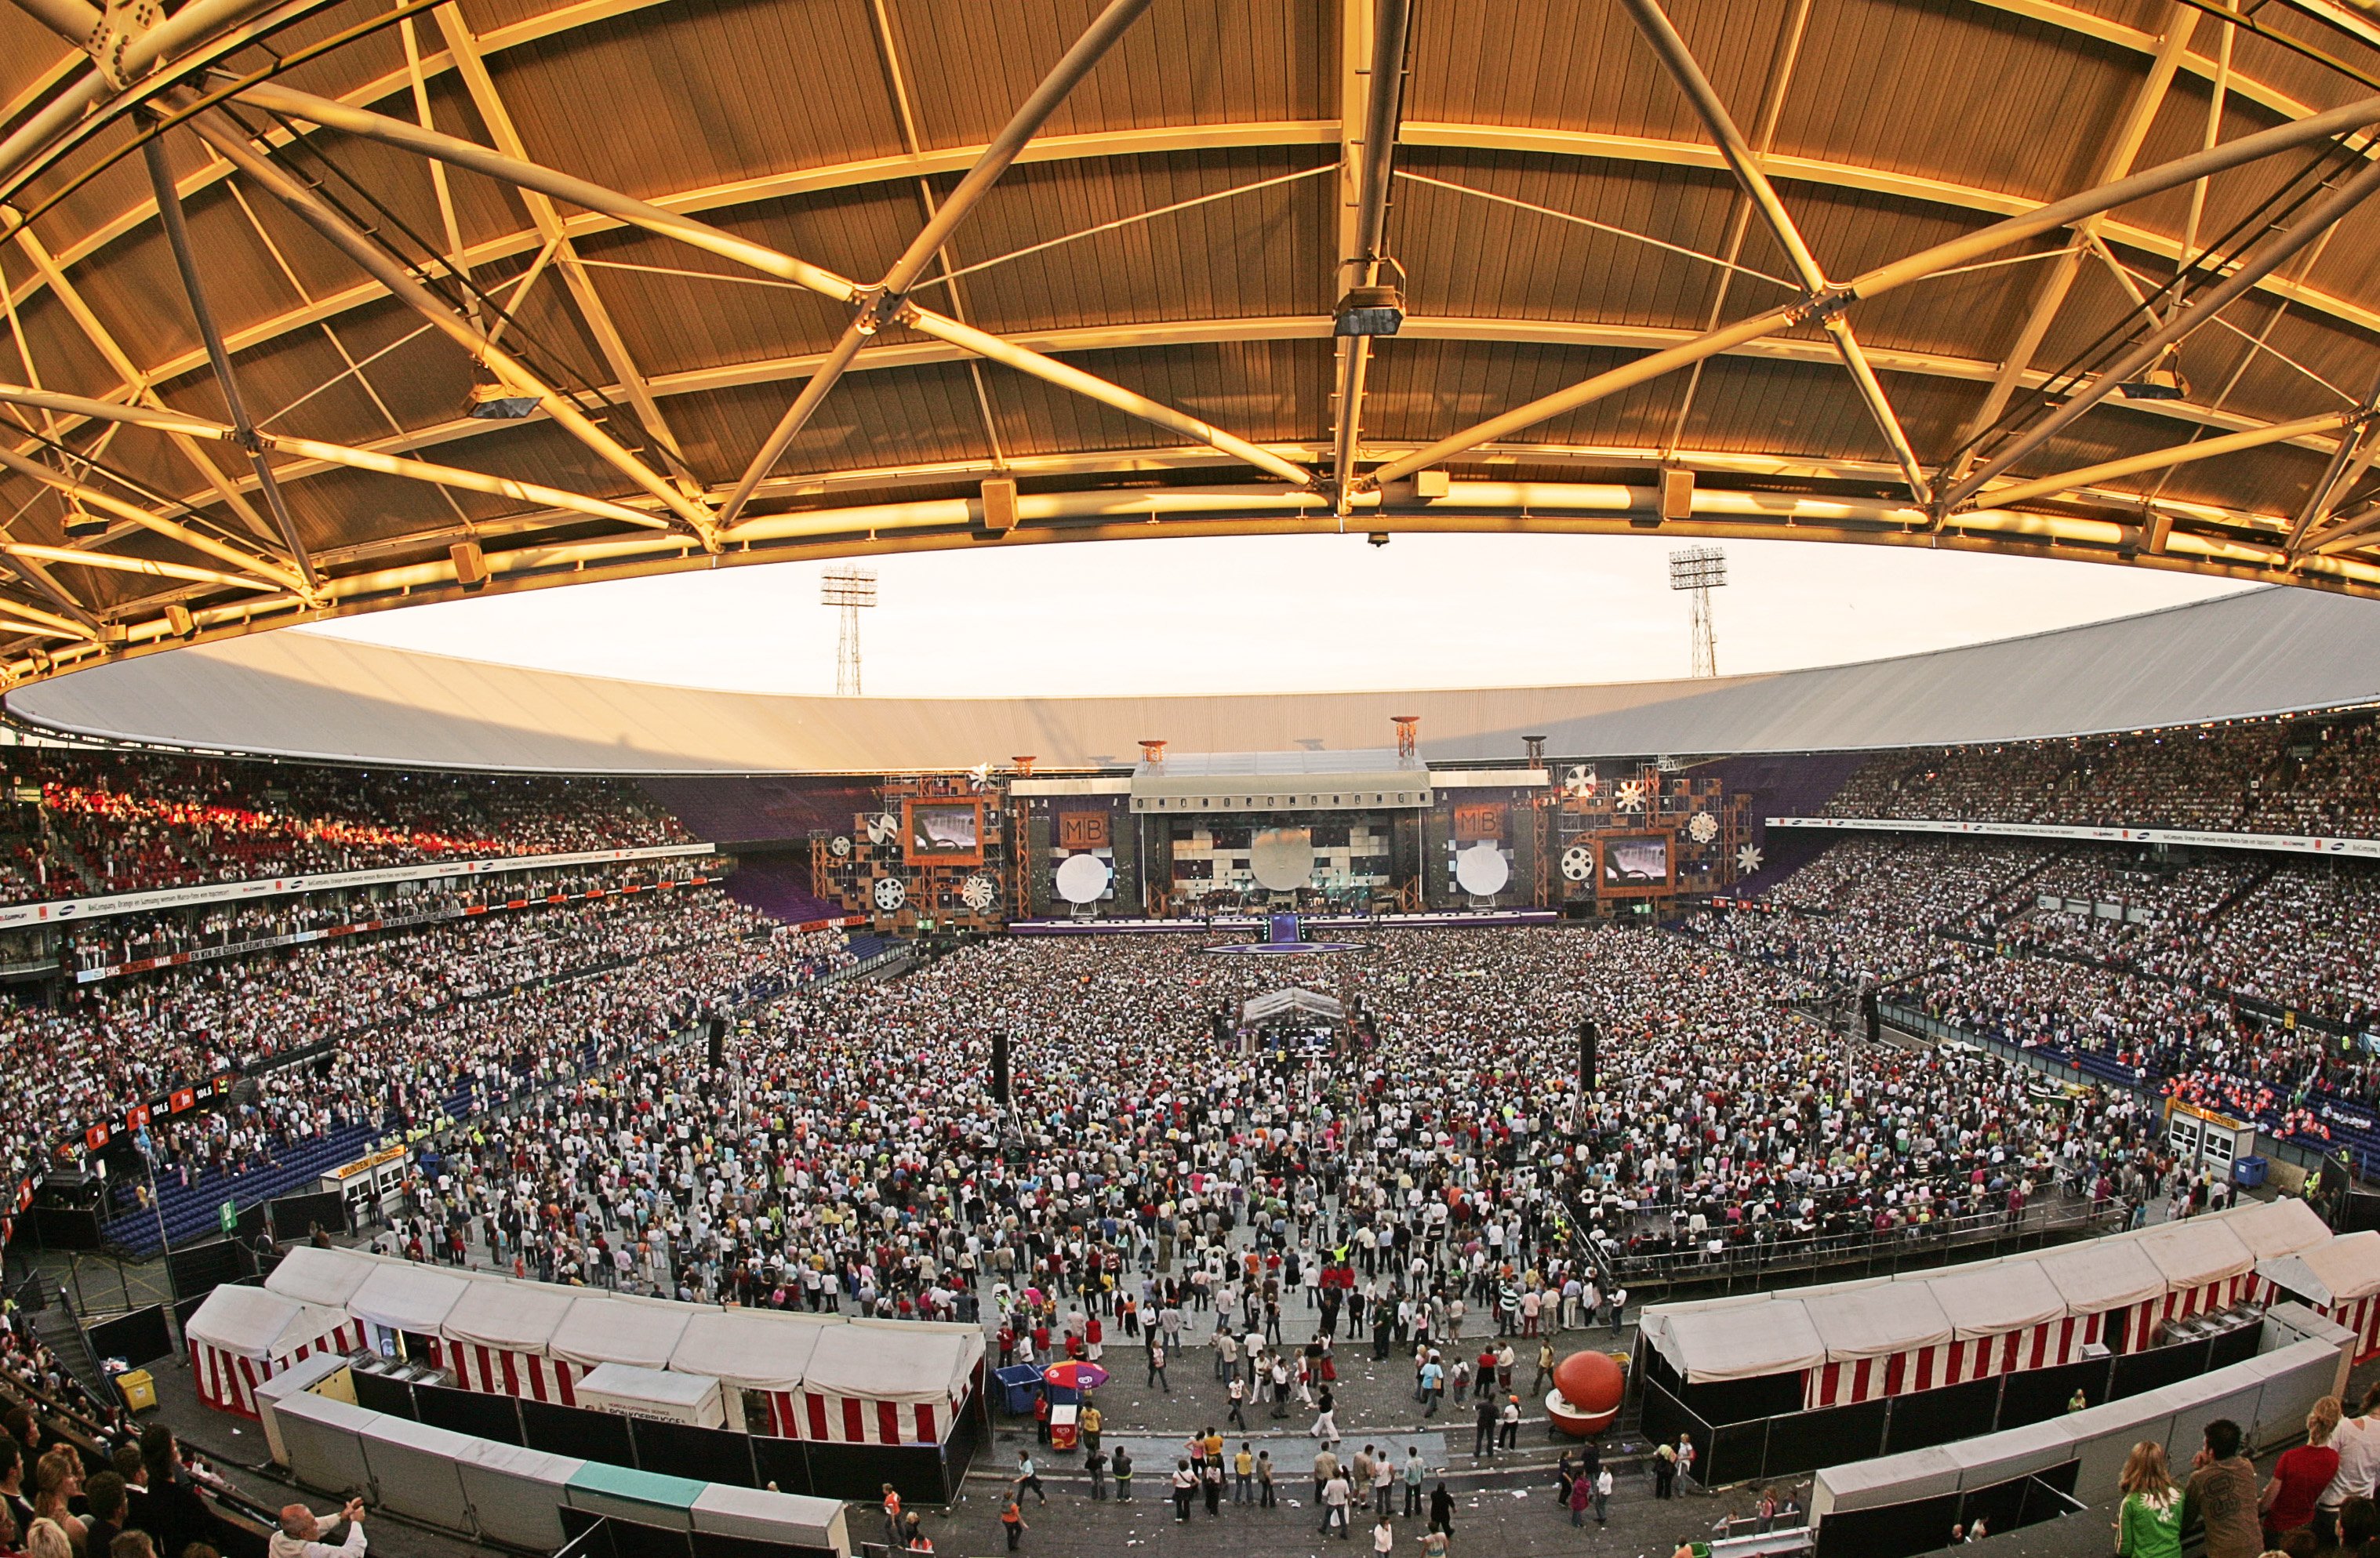 Stadion Feijenoord on X: "Over 4⃣ maanden staat @borsato weer in De Kuip!  Wat is het beste concert dat jij hebt meegemaakt in het stadion? 🙌  https://t.co/CSGKQK5V7F" / X